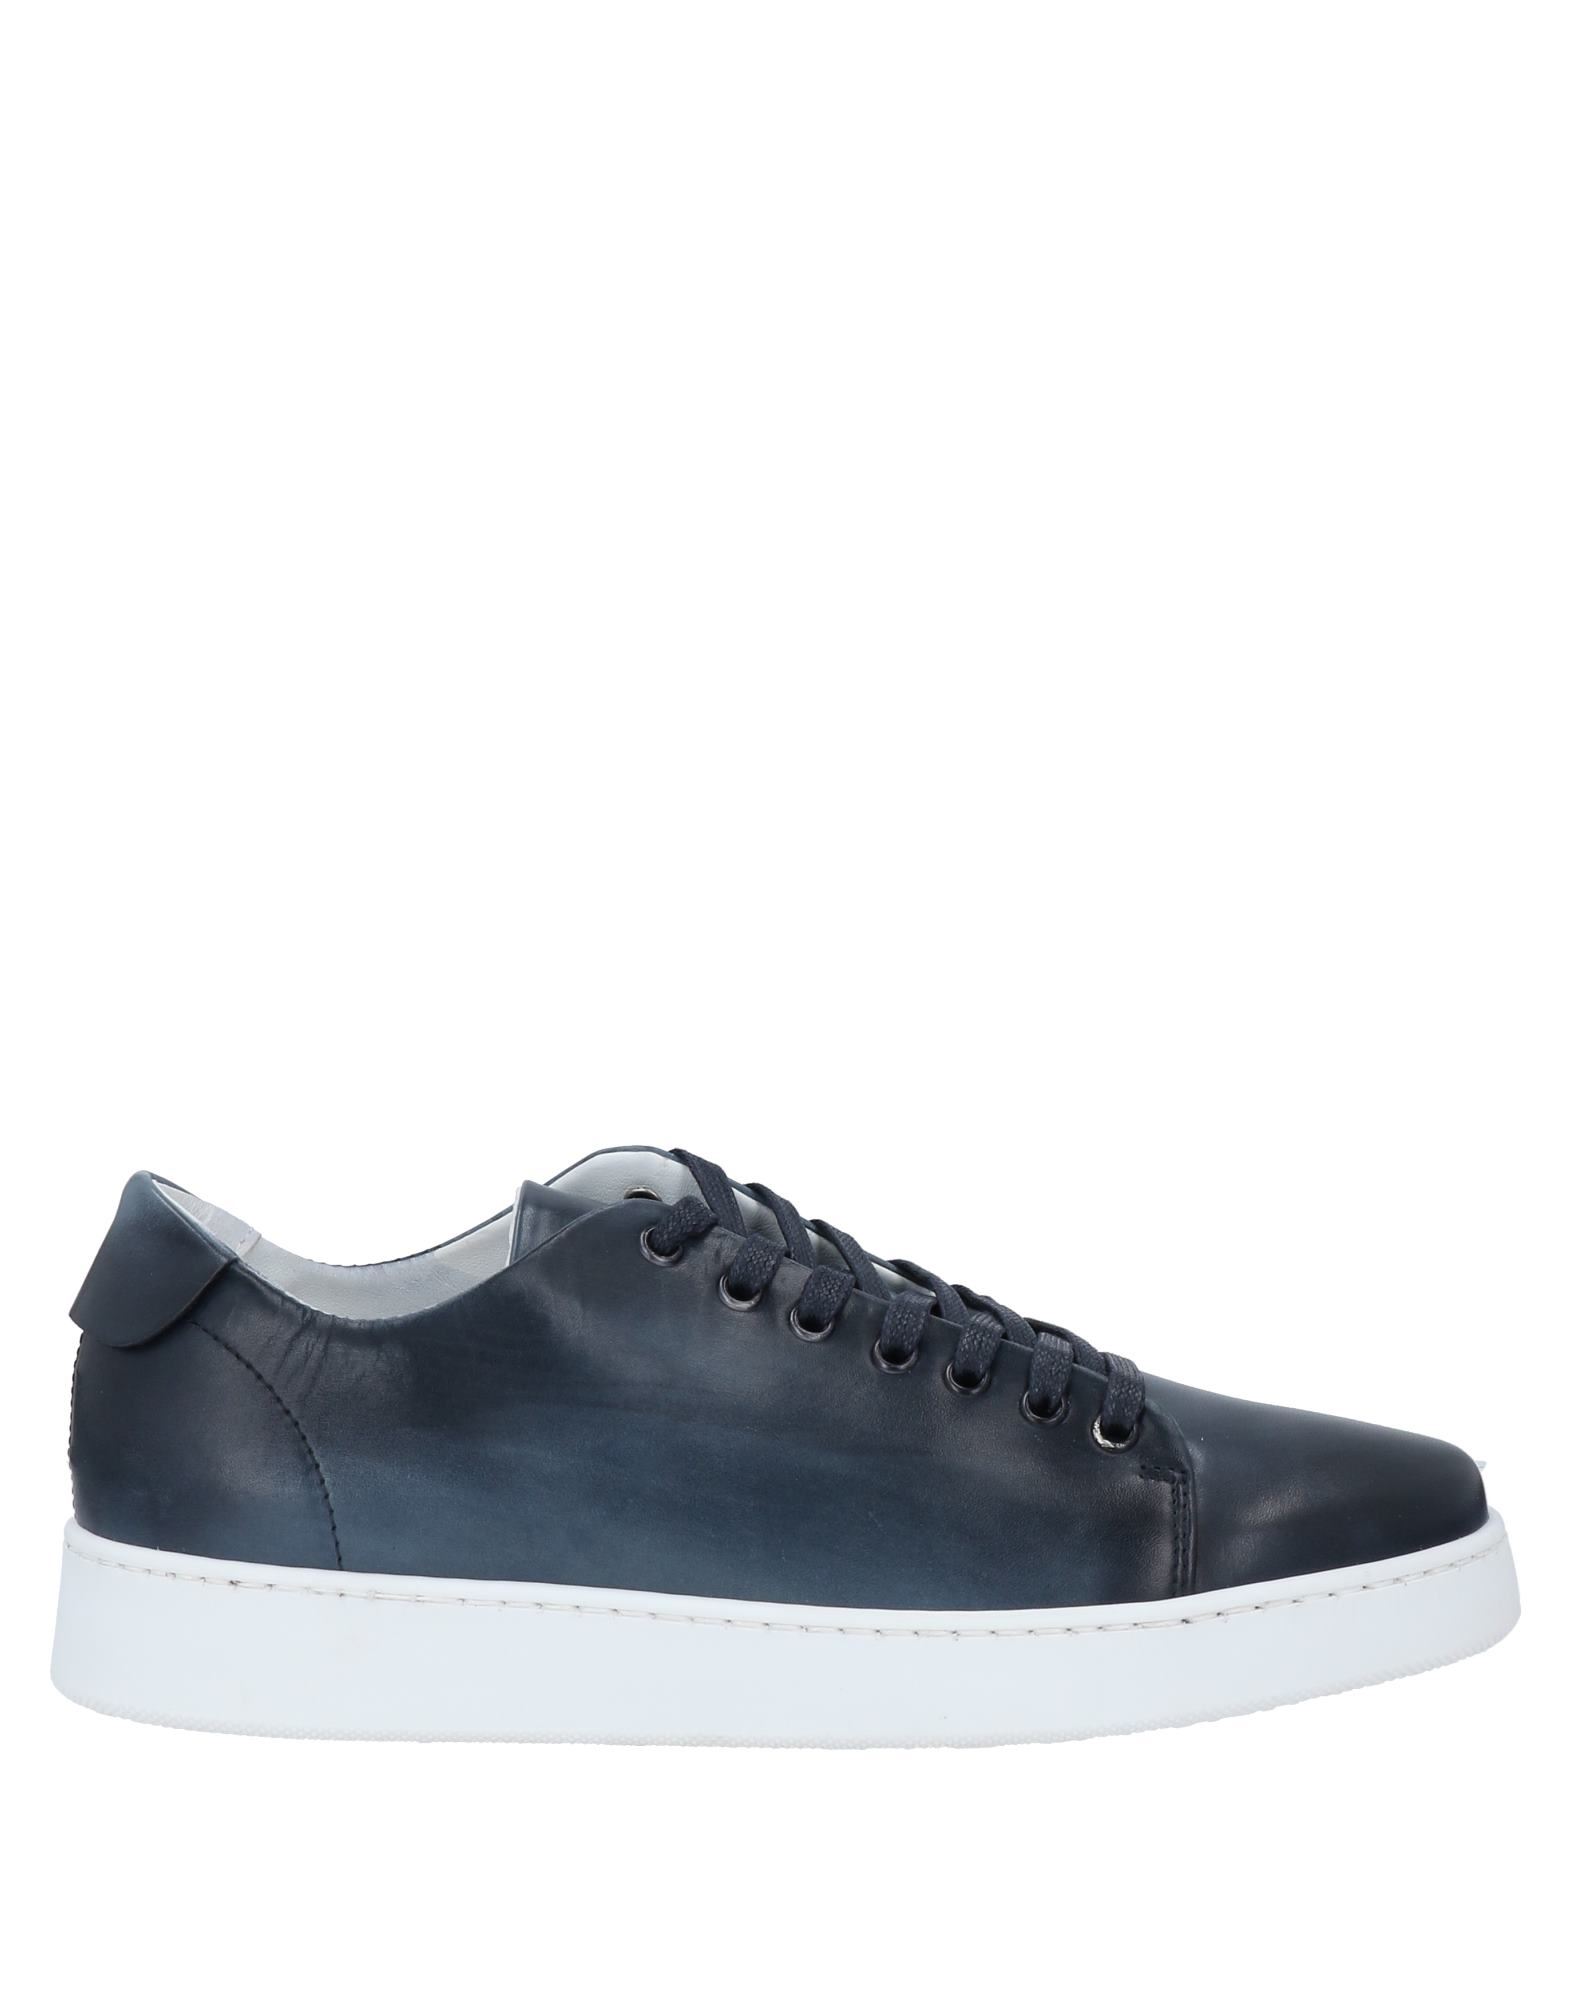 Angelo Pallotta Sneakers In Dark Blue | ModeSens